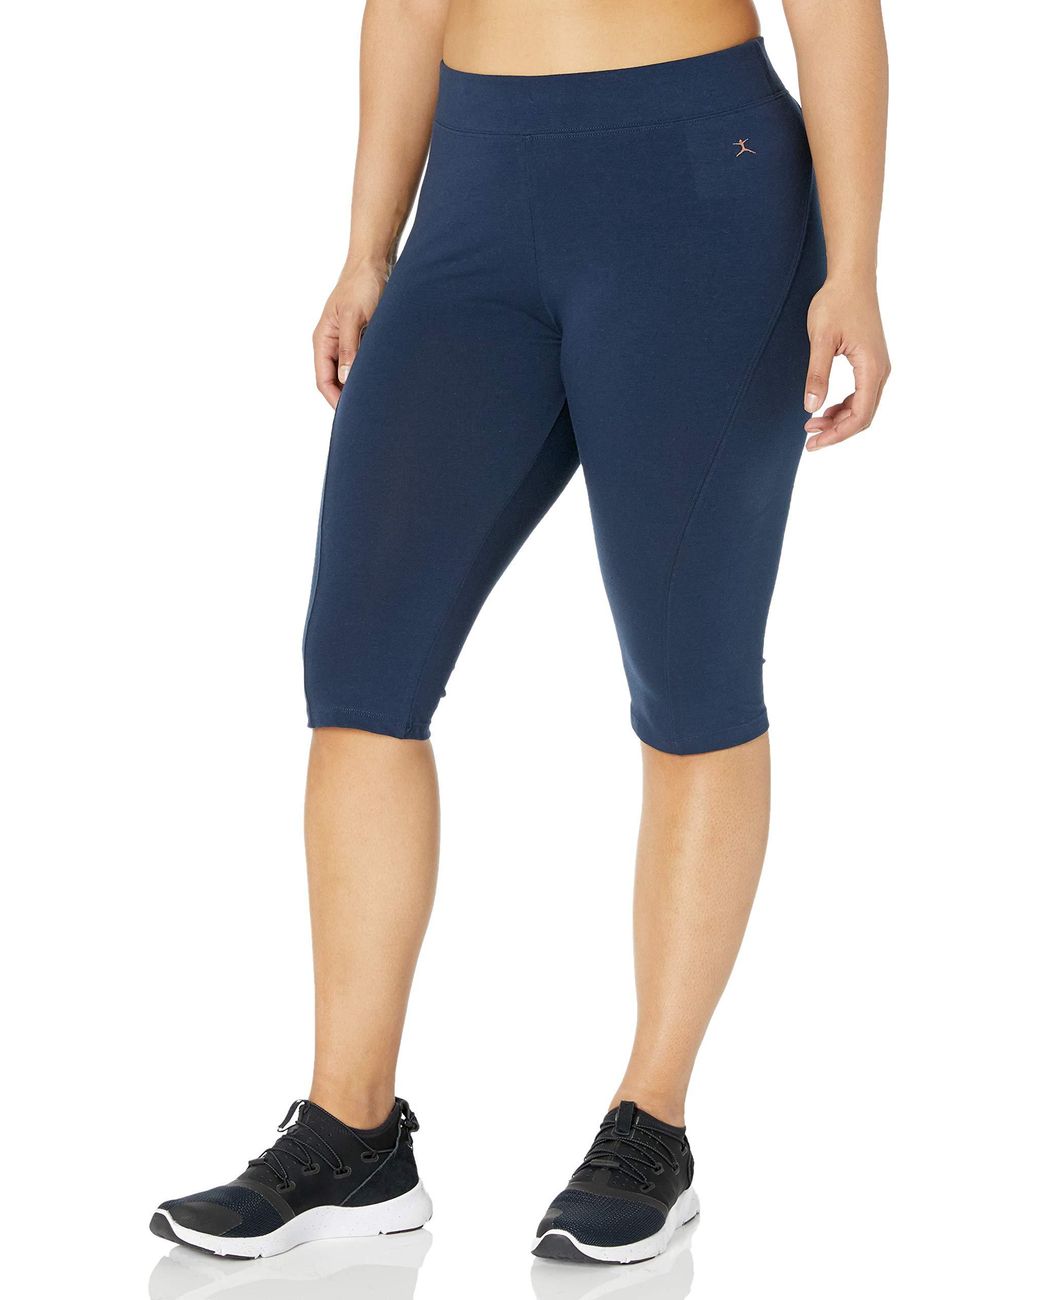 Danskin Women's Plus Size Active Yoga Pant 